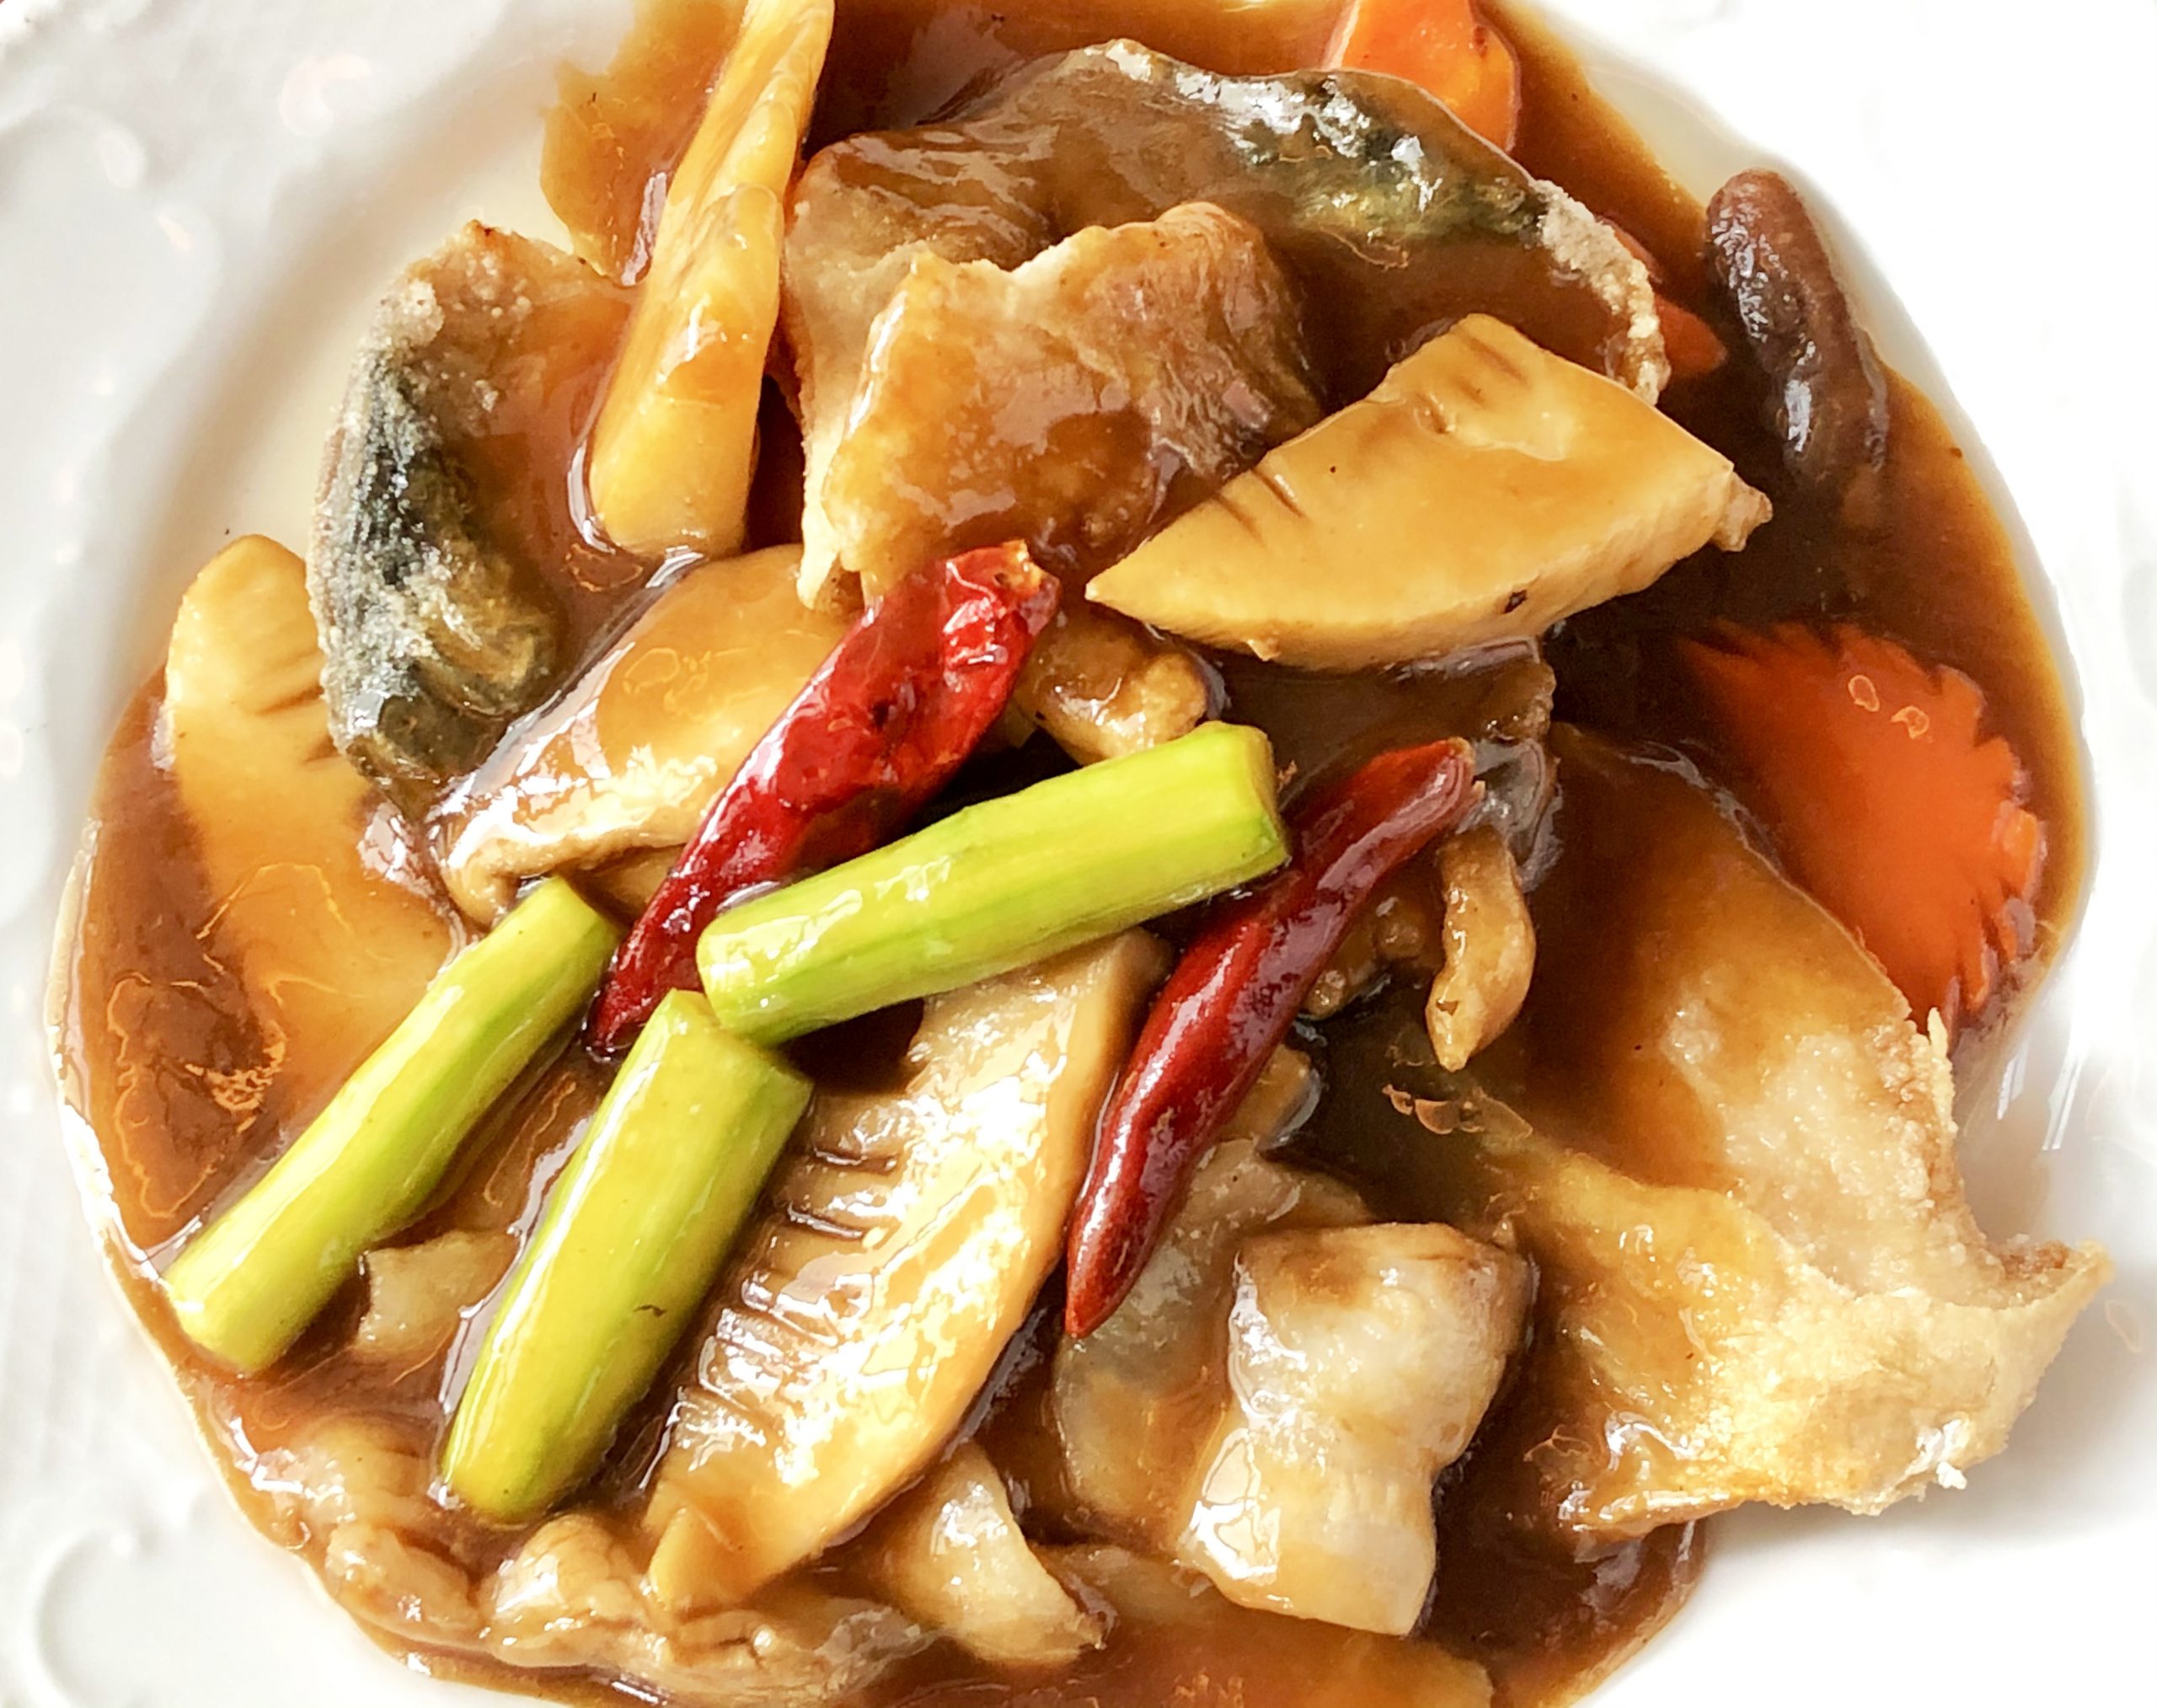 ブリ ハマチ の中華風炒め 海の恵み 食の底力 Japan 公式レシピサイト